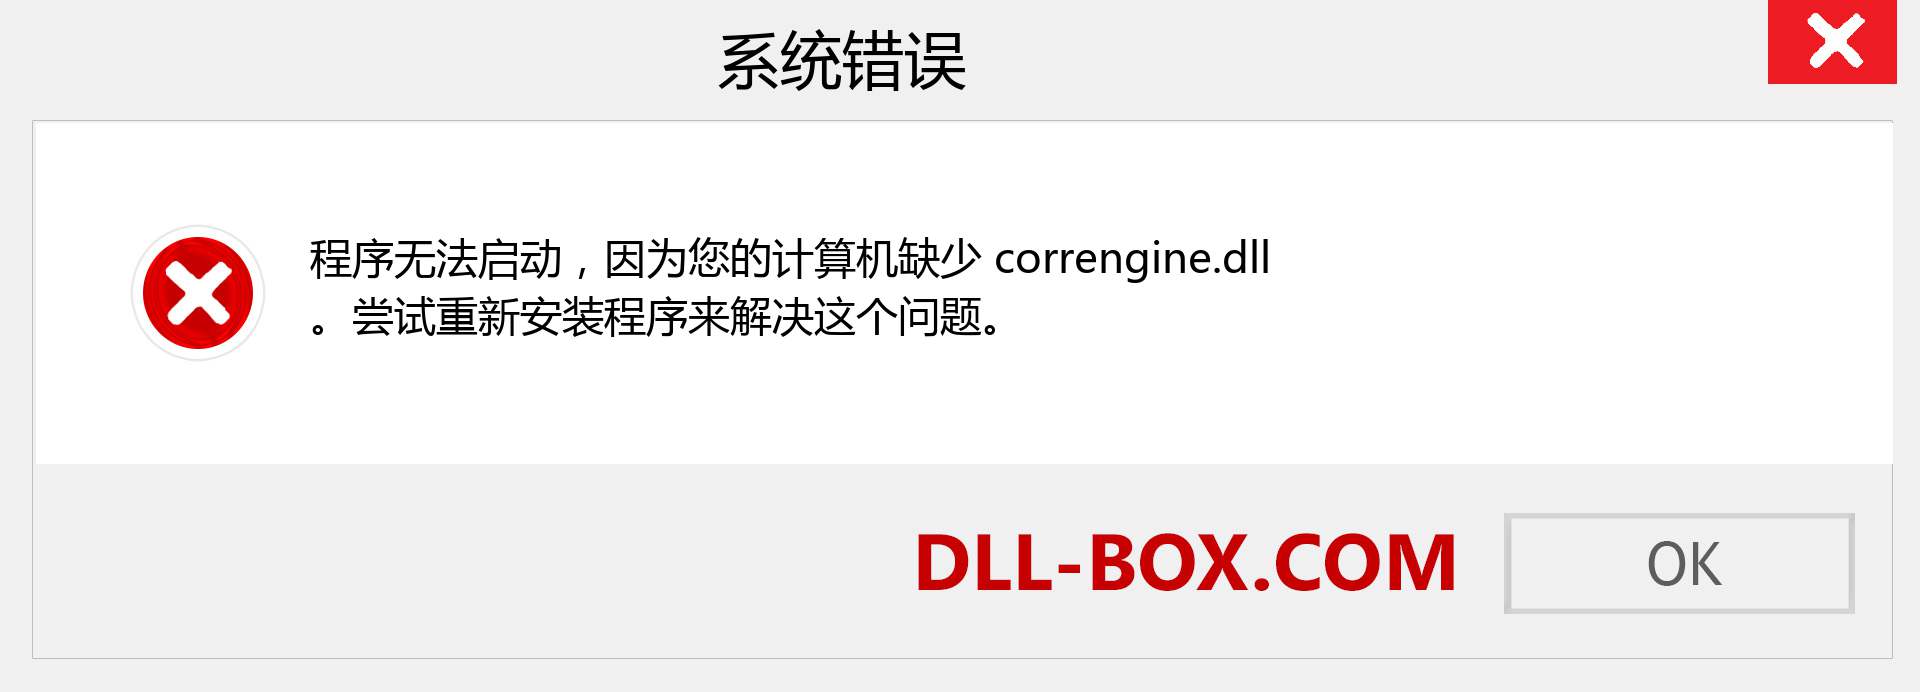 correngine.dll 文件丢失？。 适用于 Windows 7、8、10 的下载 - 修复 Windows、照片、图像上的 correngine dll 丢失错误